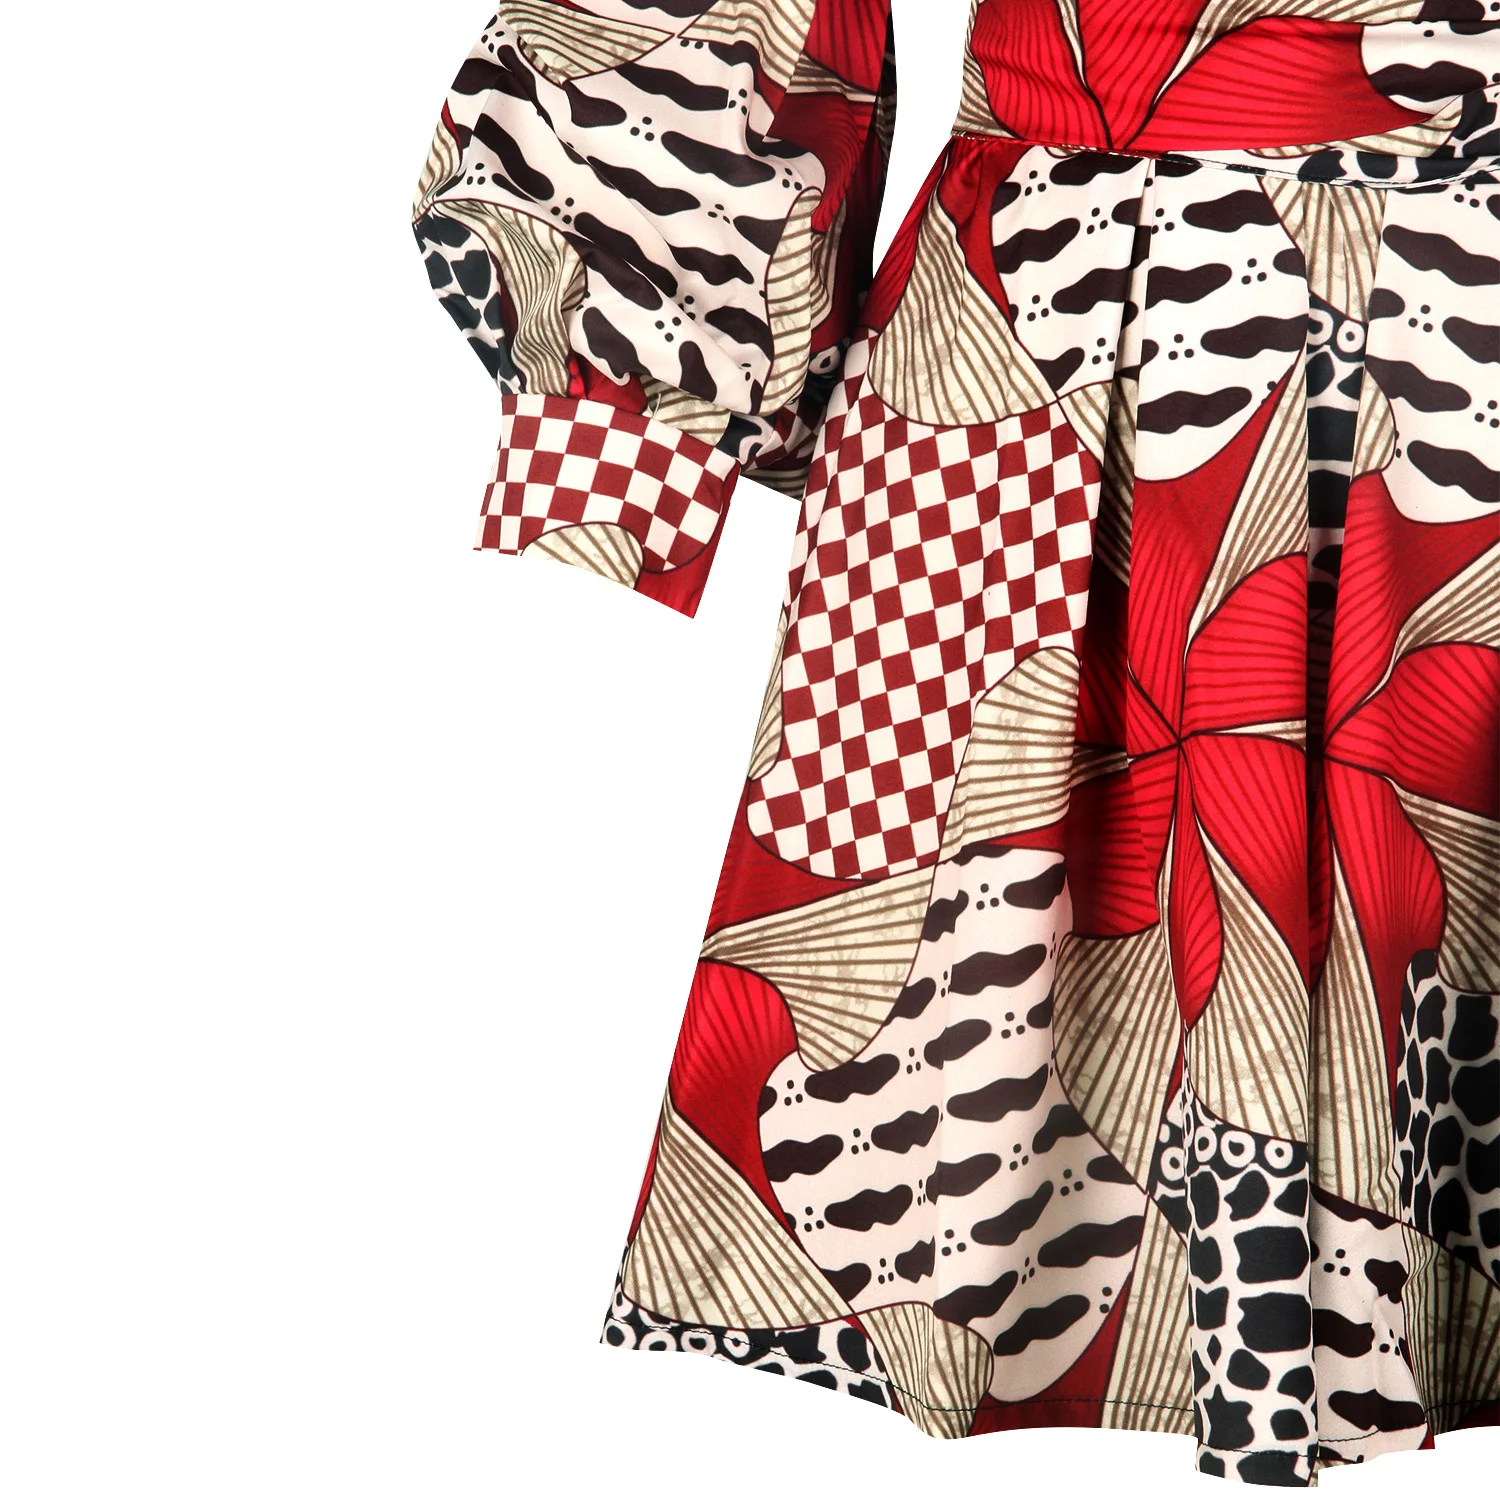 Vetement Femme африканская юбка топы Женская одежда для вечеринок сексуальные платья для женщин с цветочным принтом традиционная одежда наряд